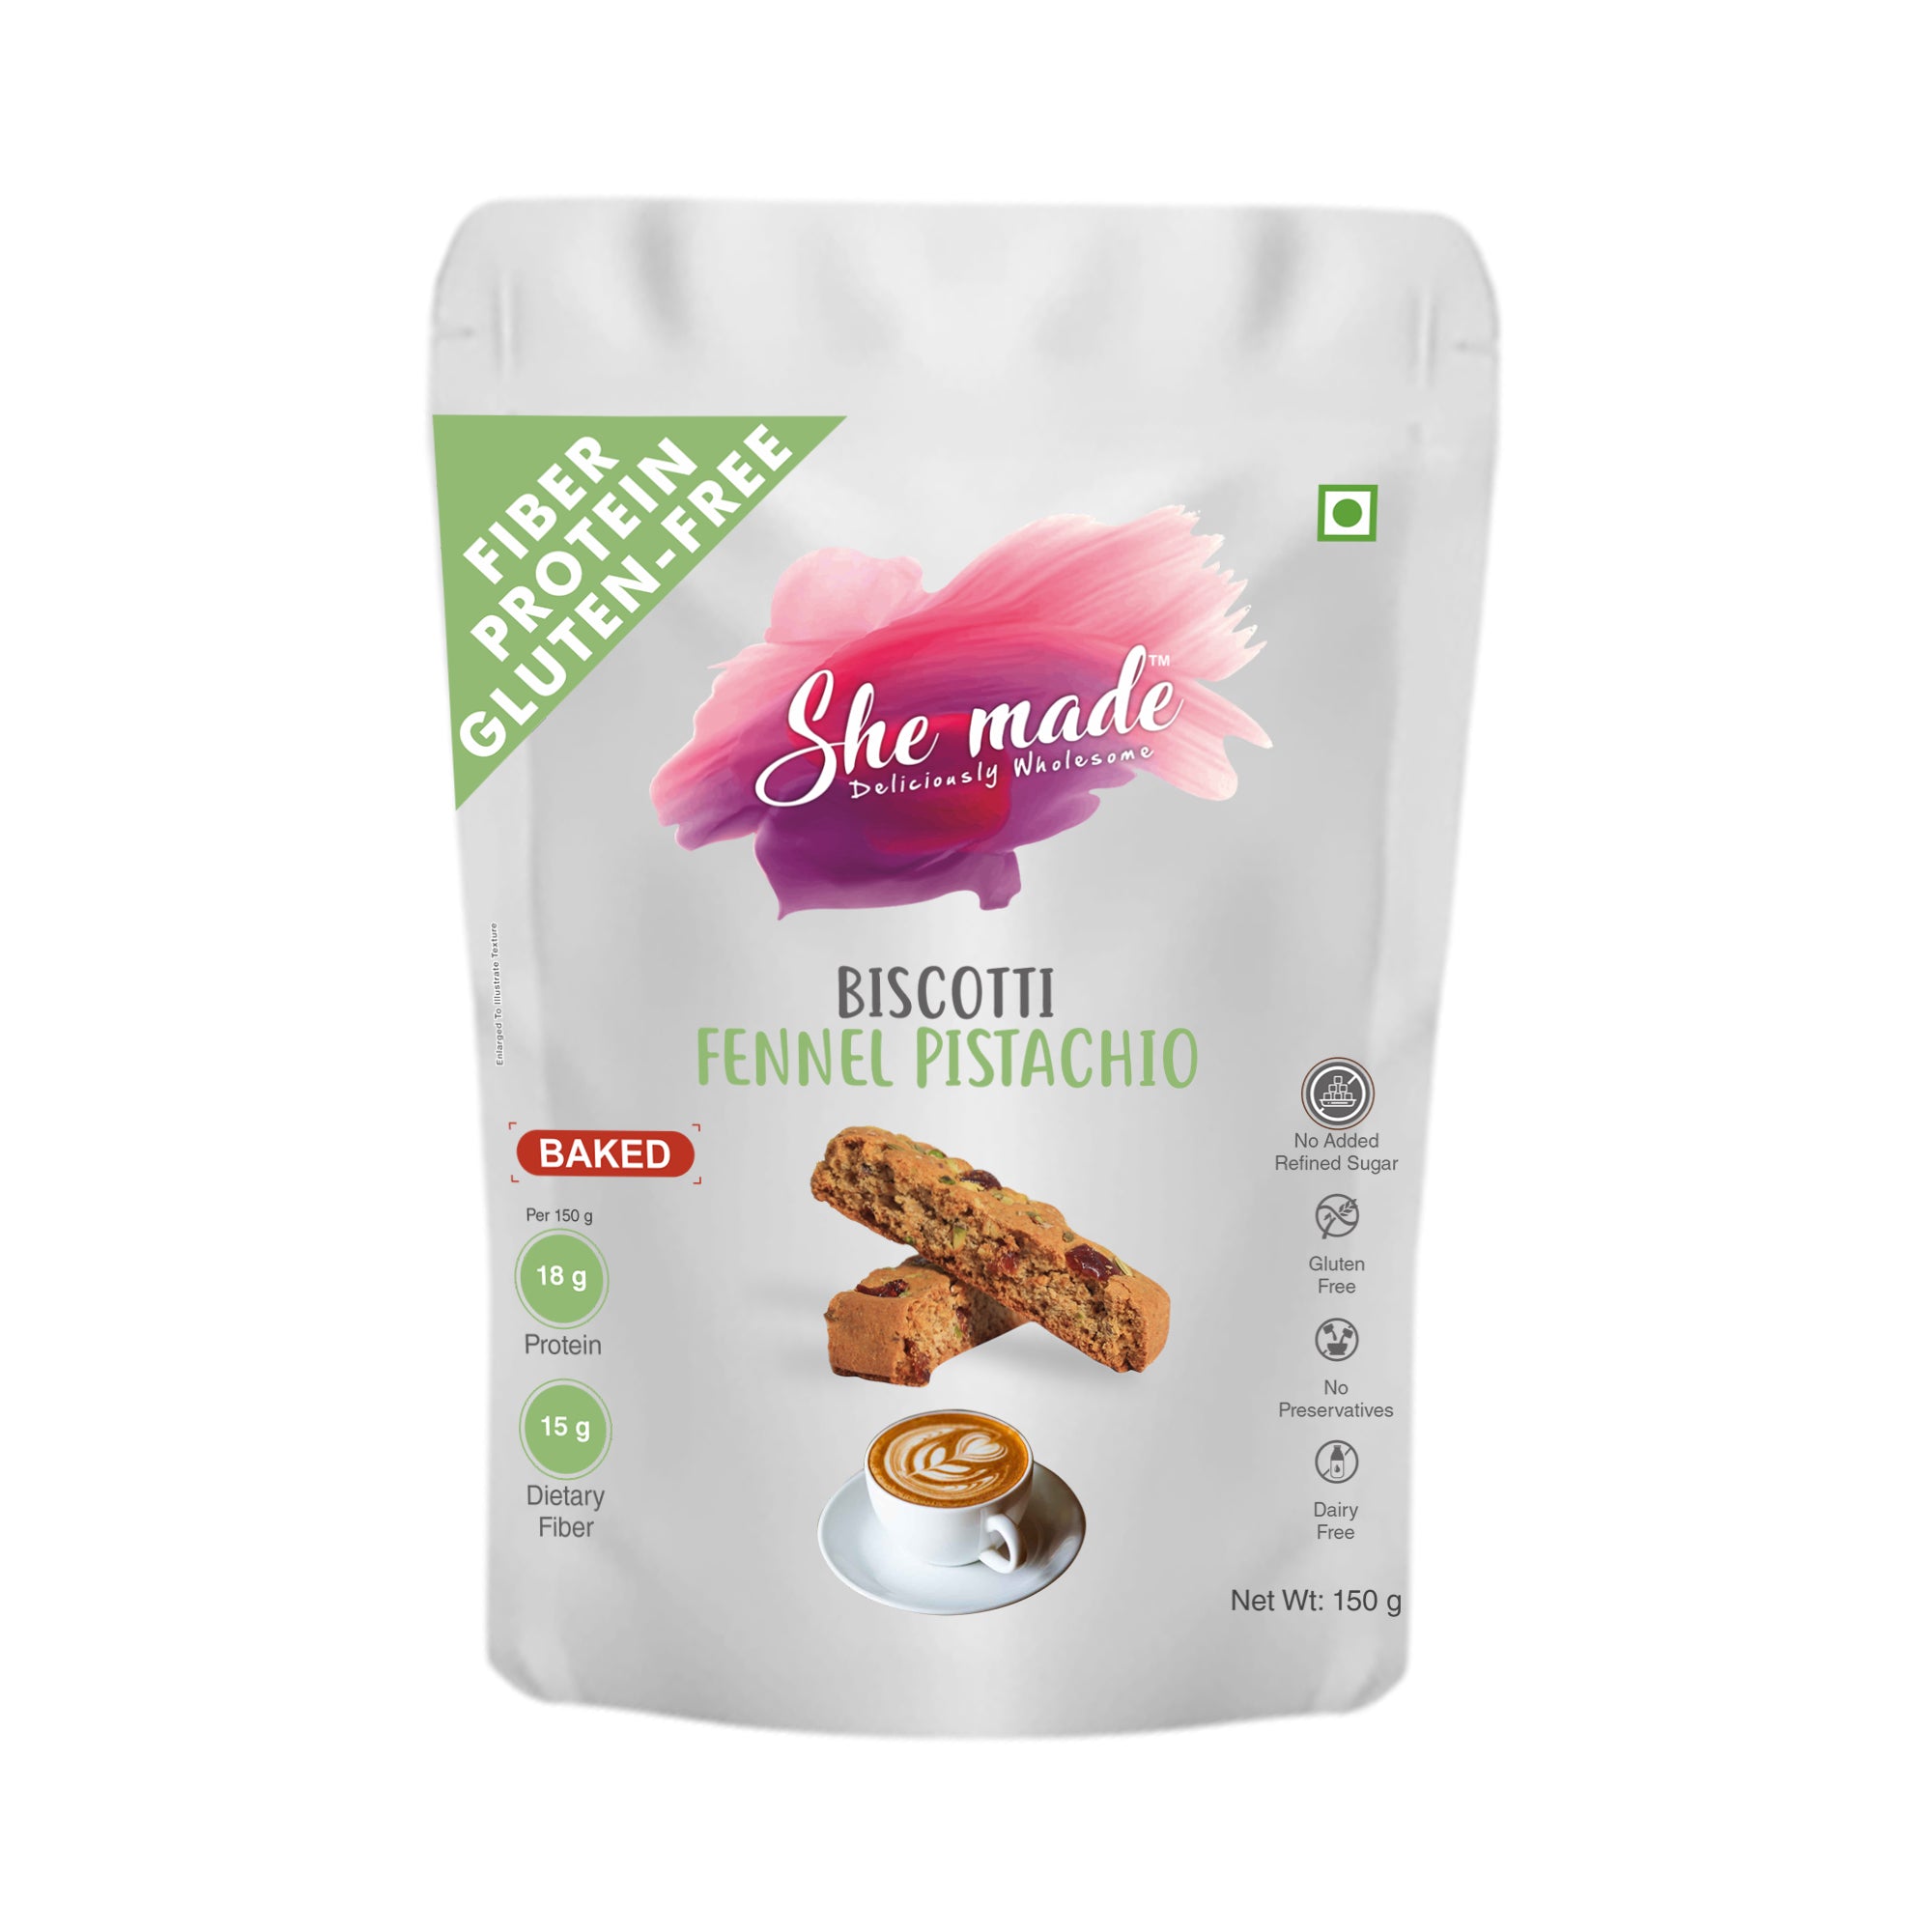 Biscotti - Fennel Pistachio 150 gms